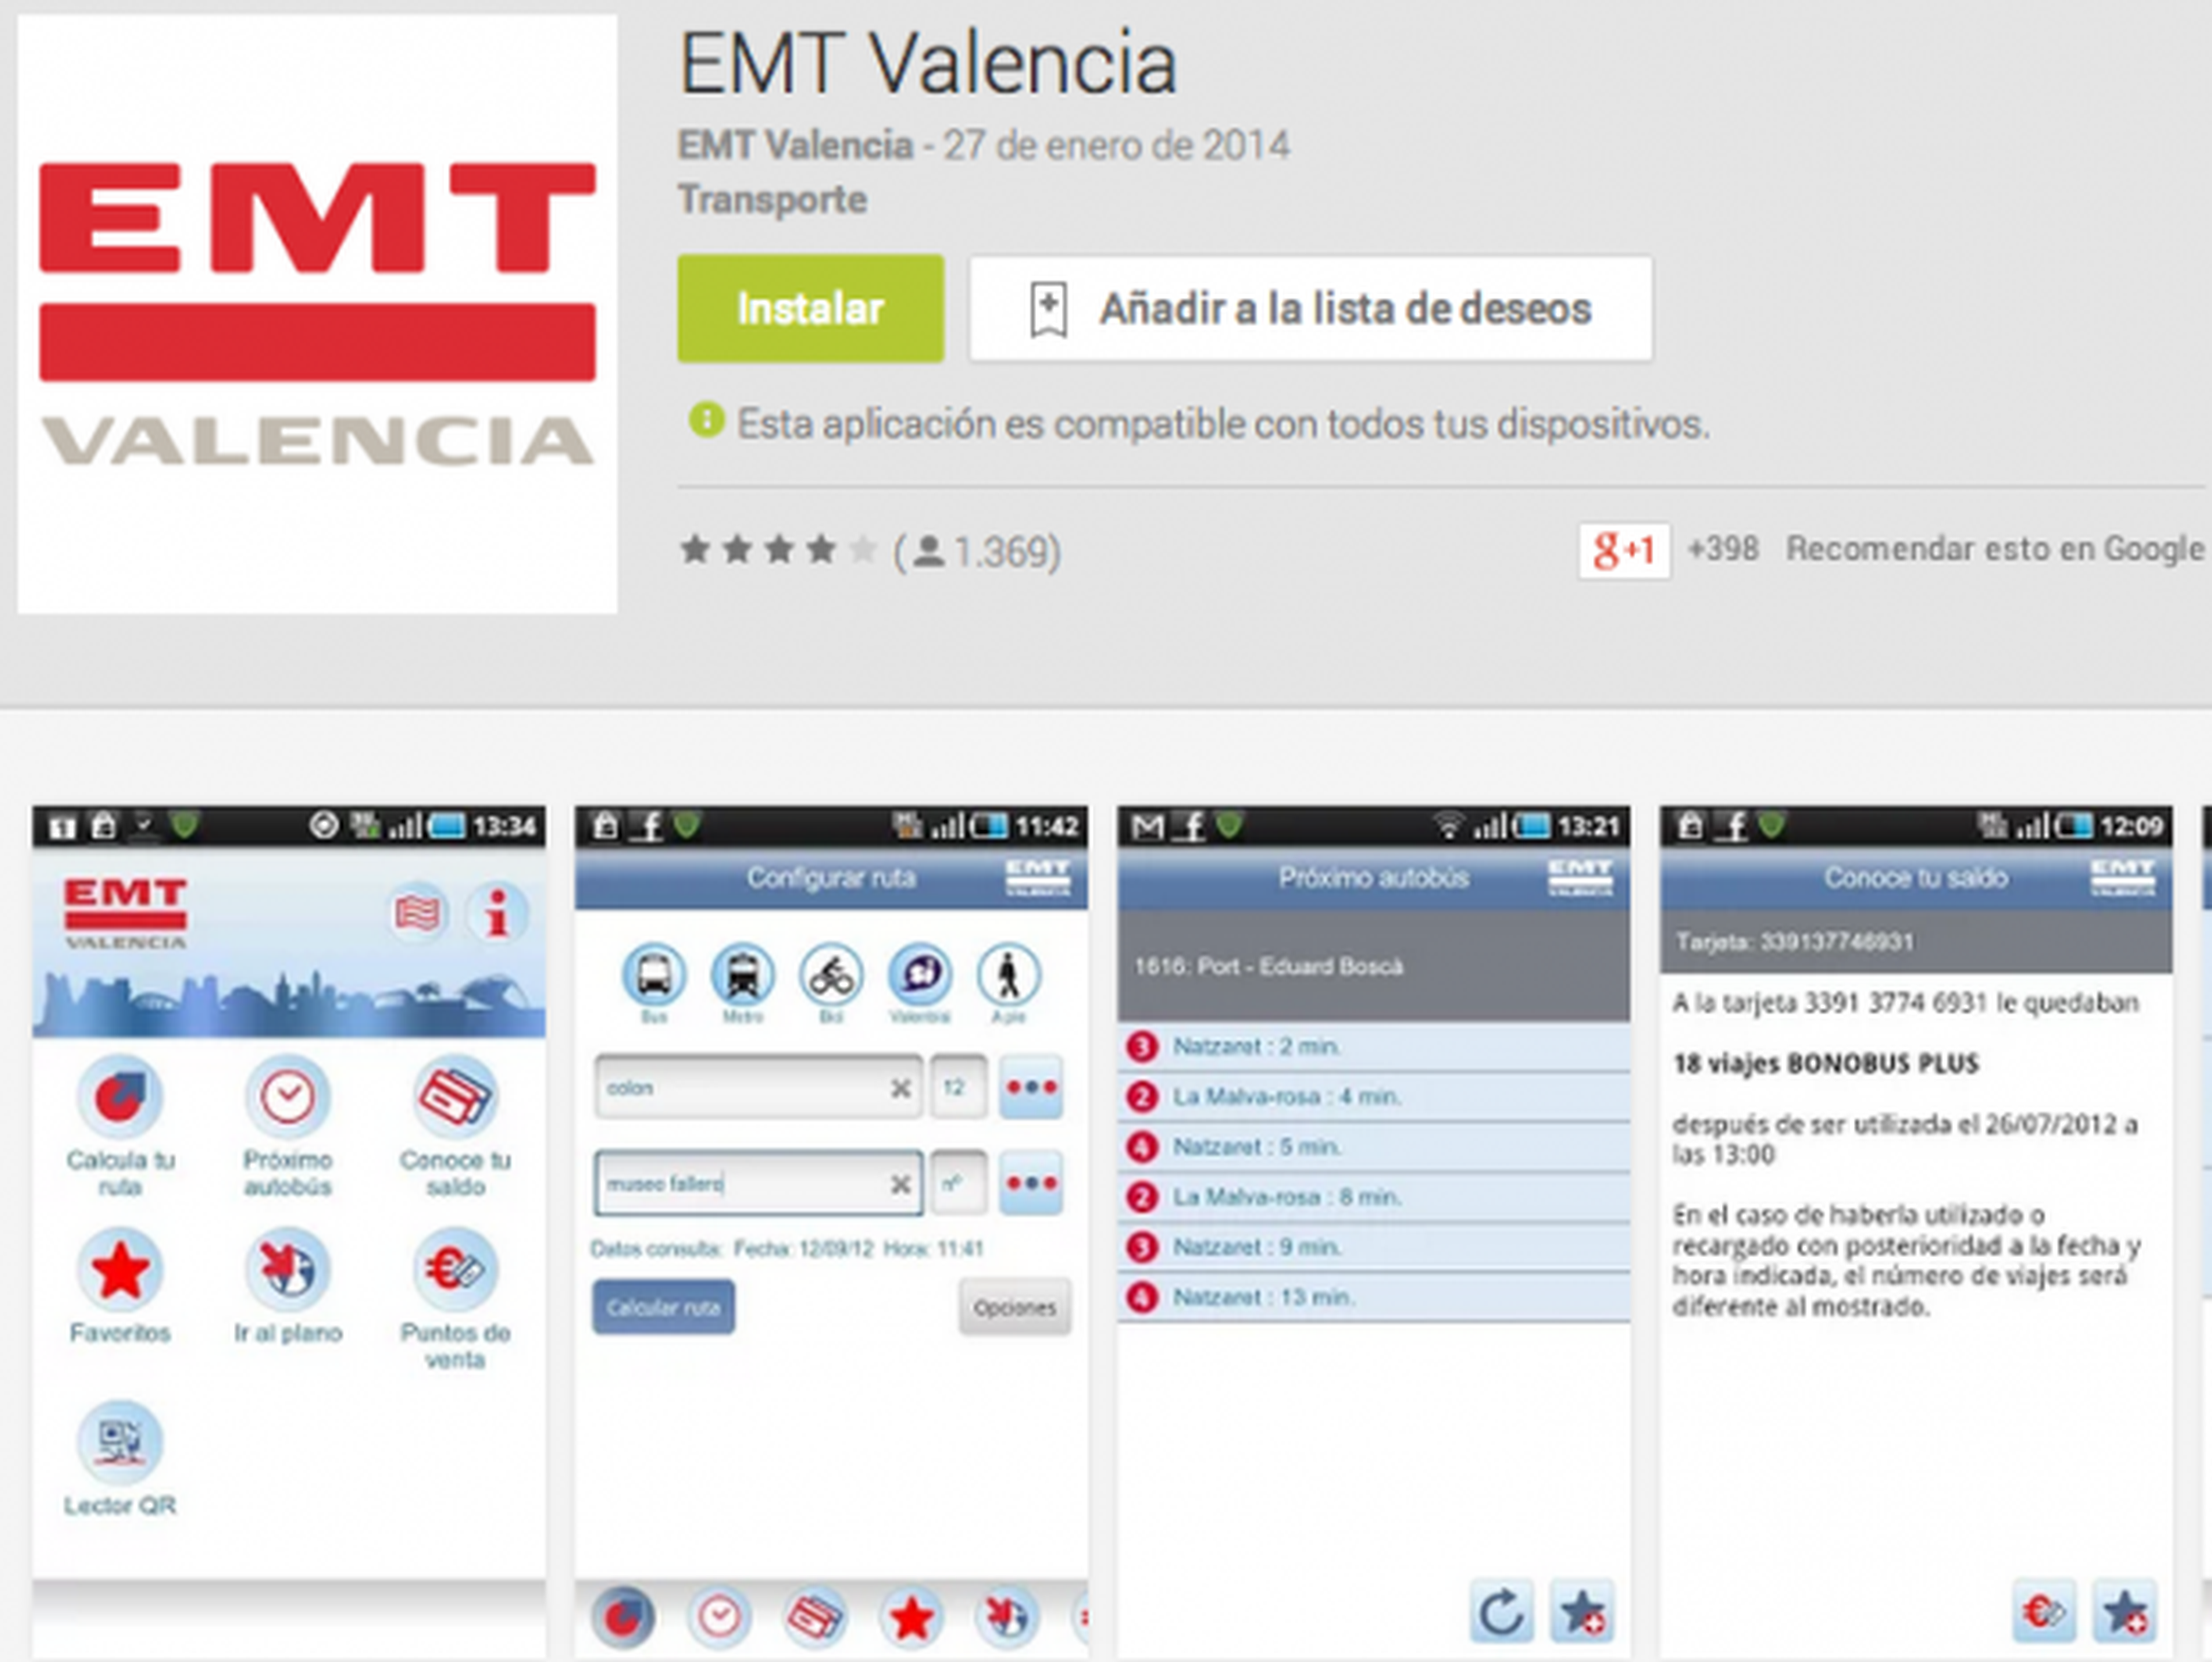 EMT Valencia app